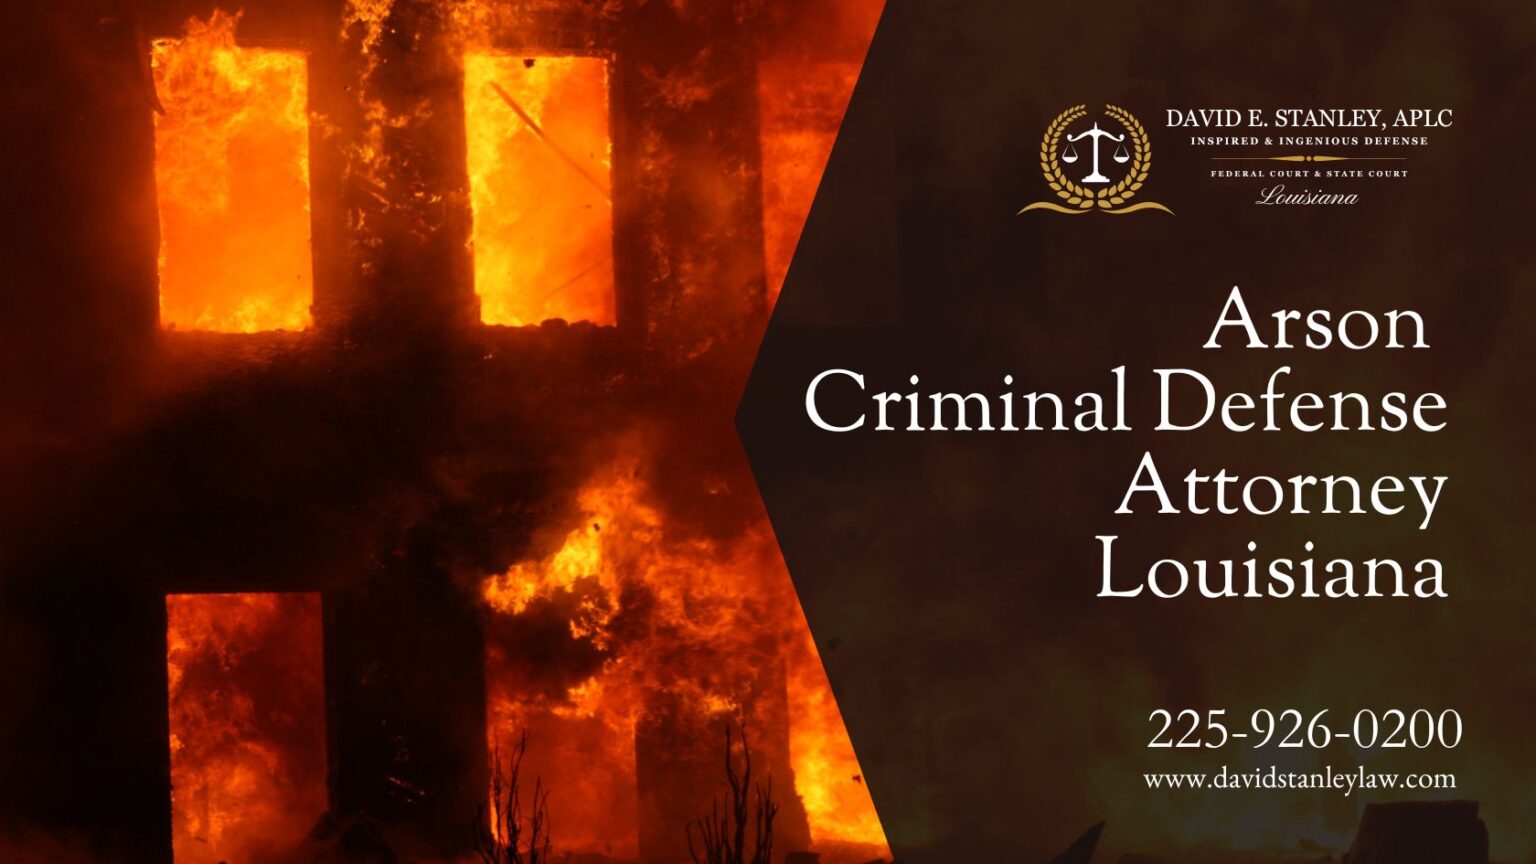 Arson Criminal Defense Attorney Louisiana